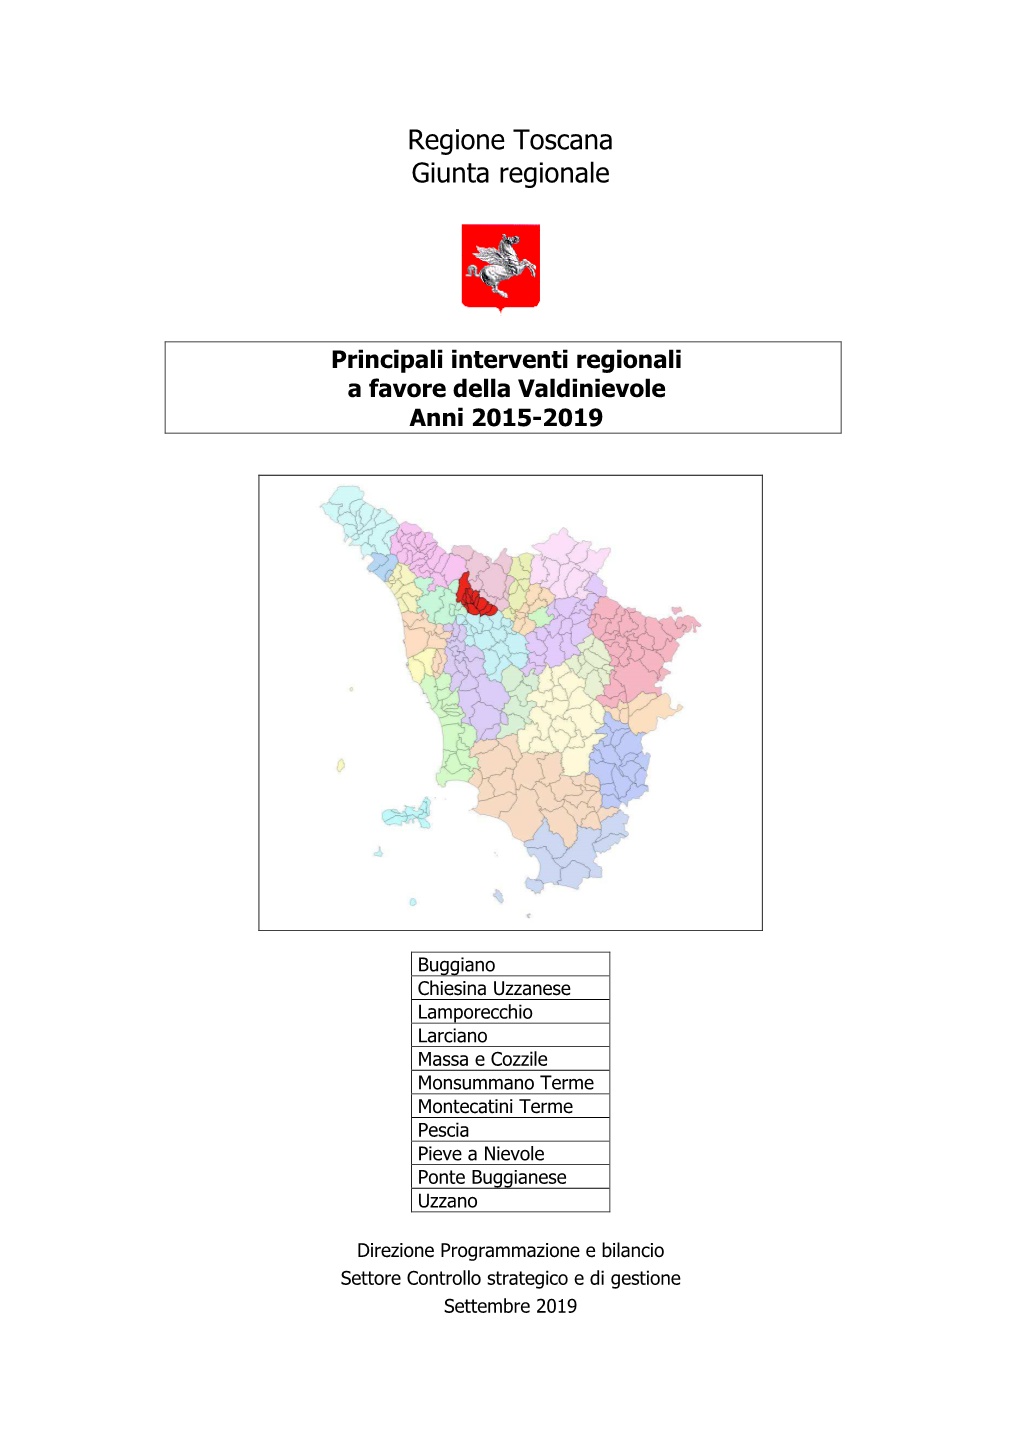 Principali Interventi Regionali a Favore Della Valdinievole Anni 2015-2019